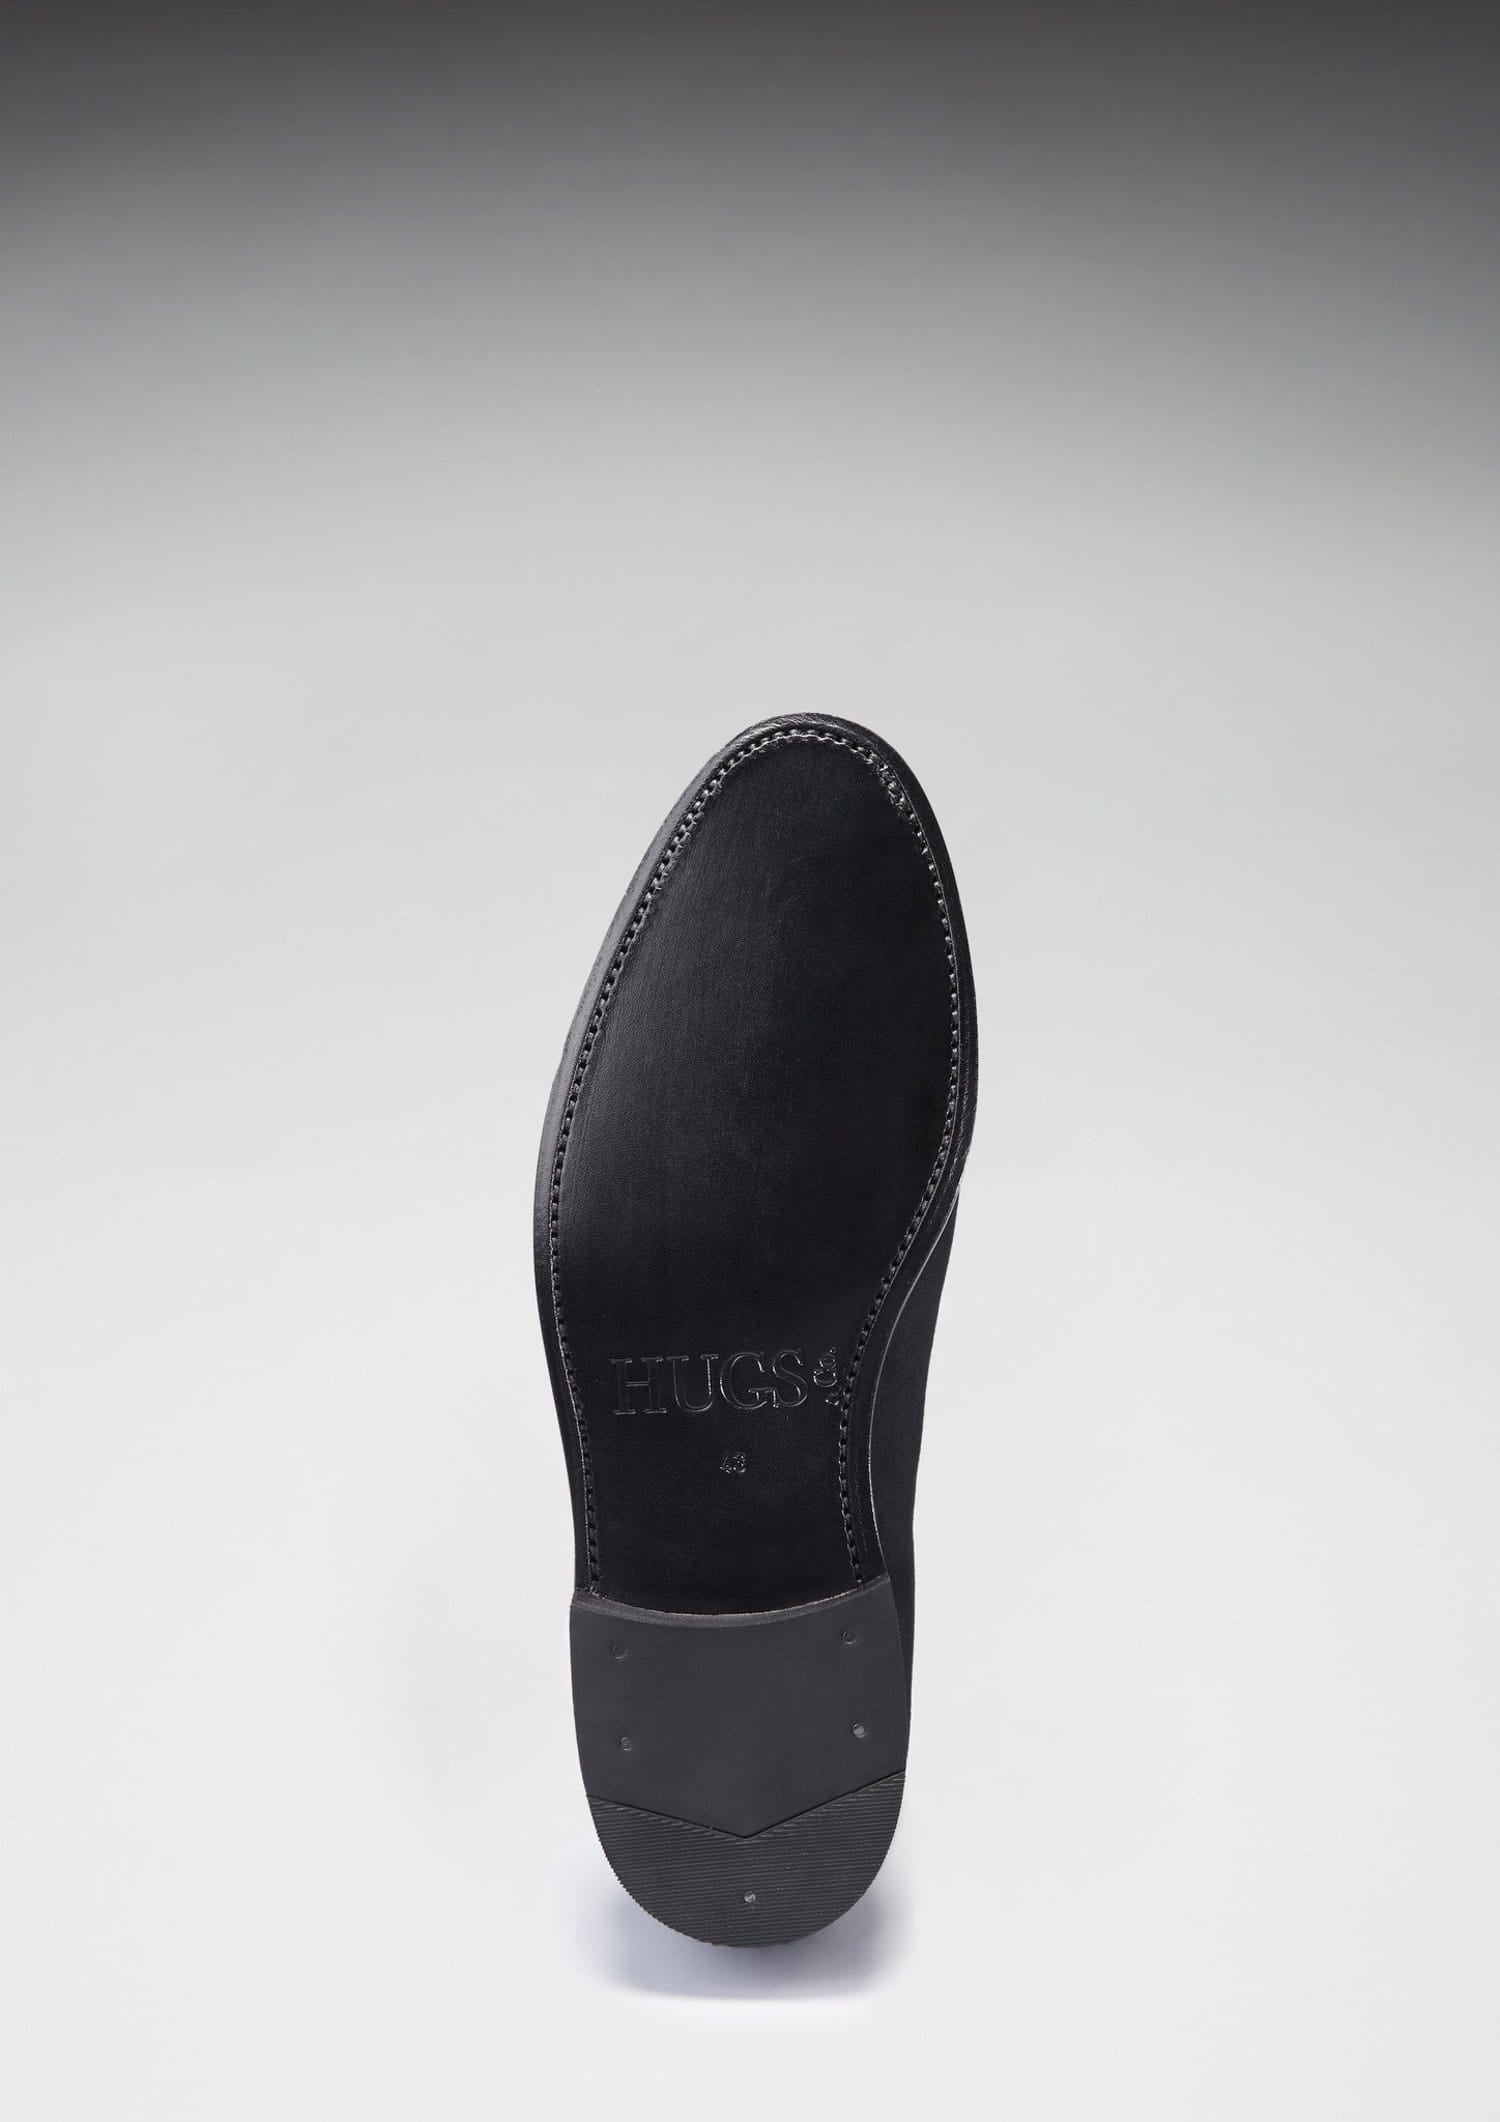 Loafer aus schwarzem Wildleder mit Schnürung, rahmengenähte Ledersohle